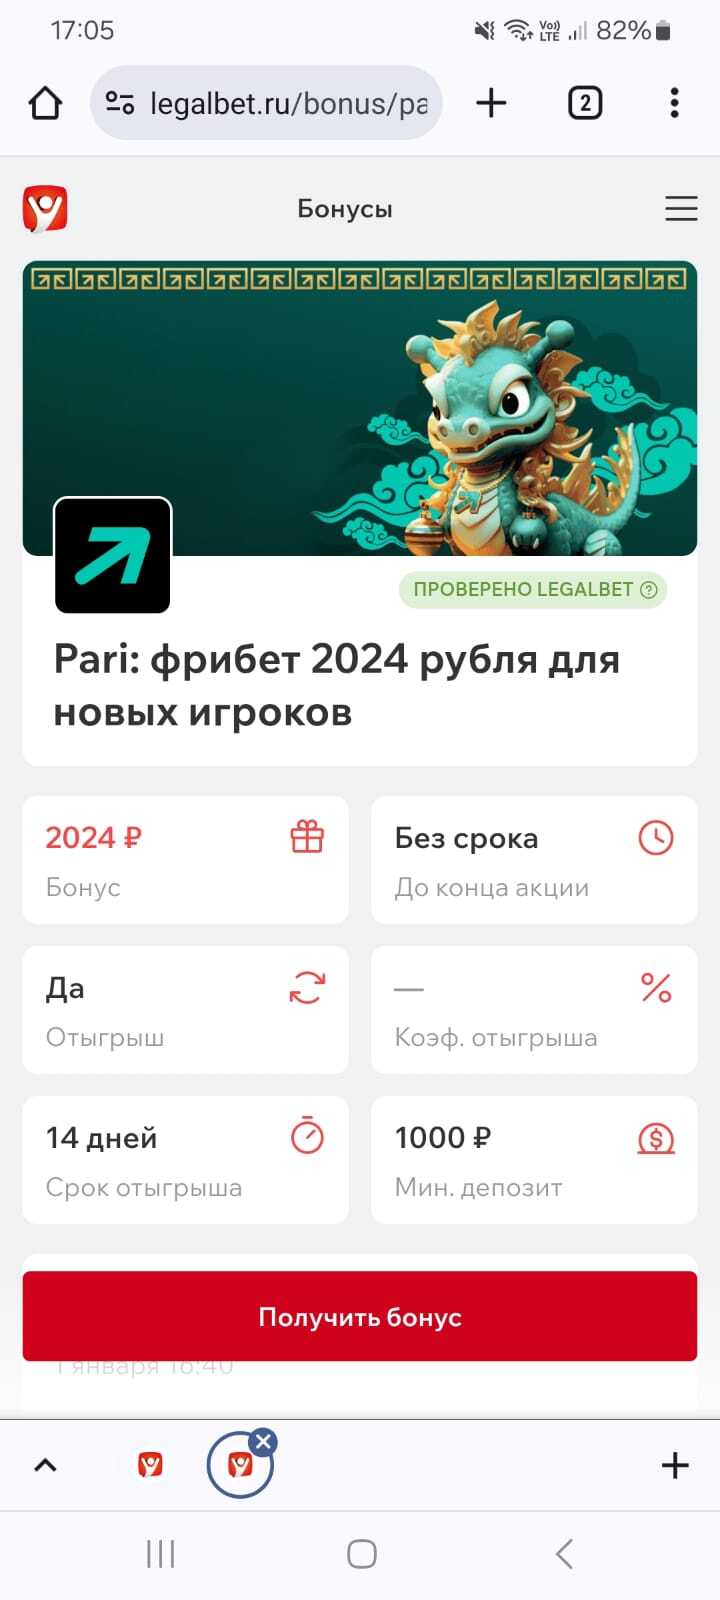 Фрибет 2024 рубля для новых игроков от БК Pari